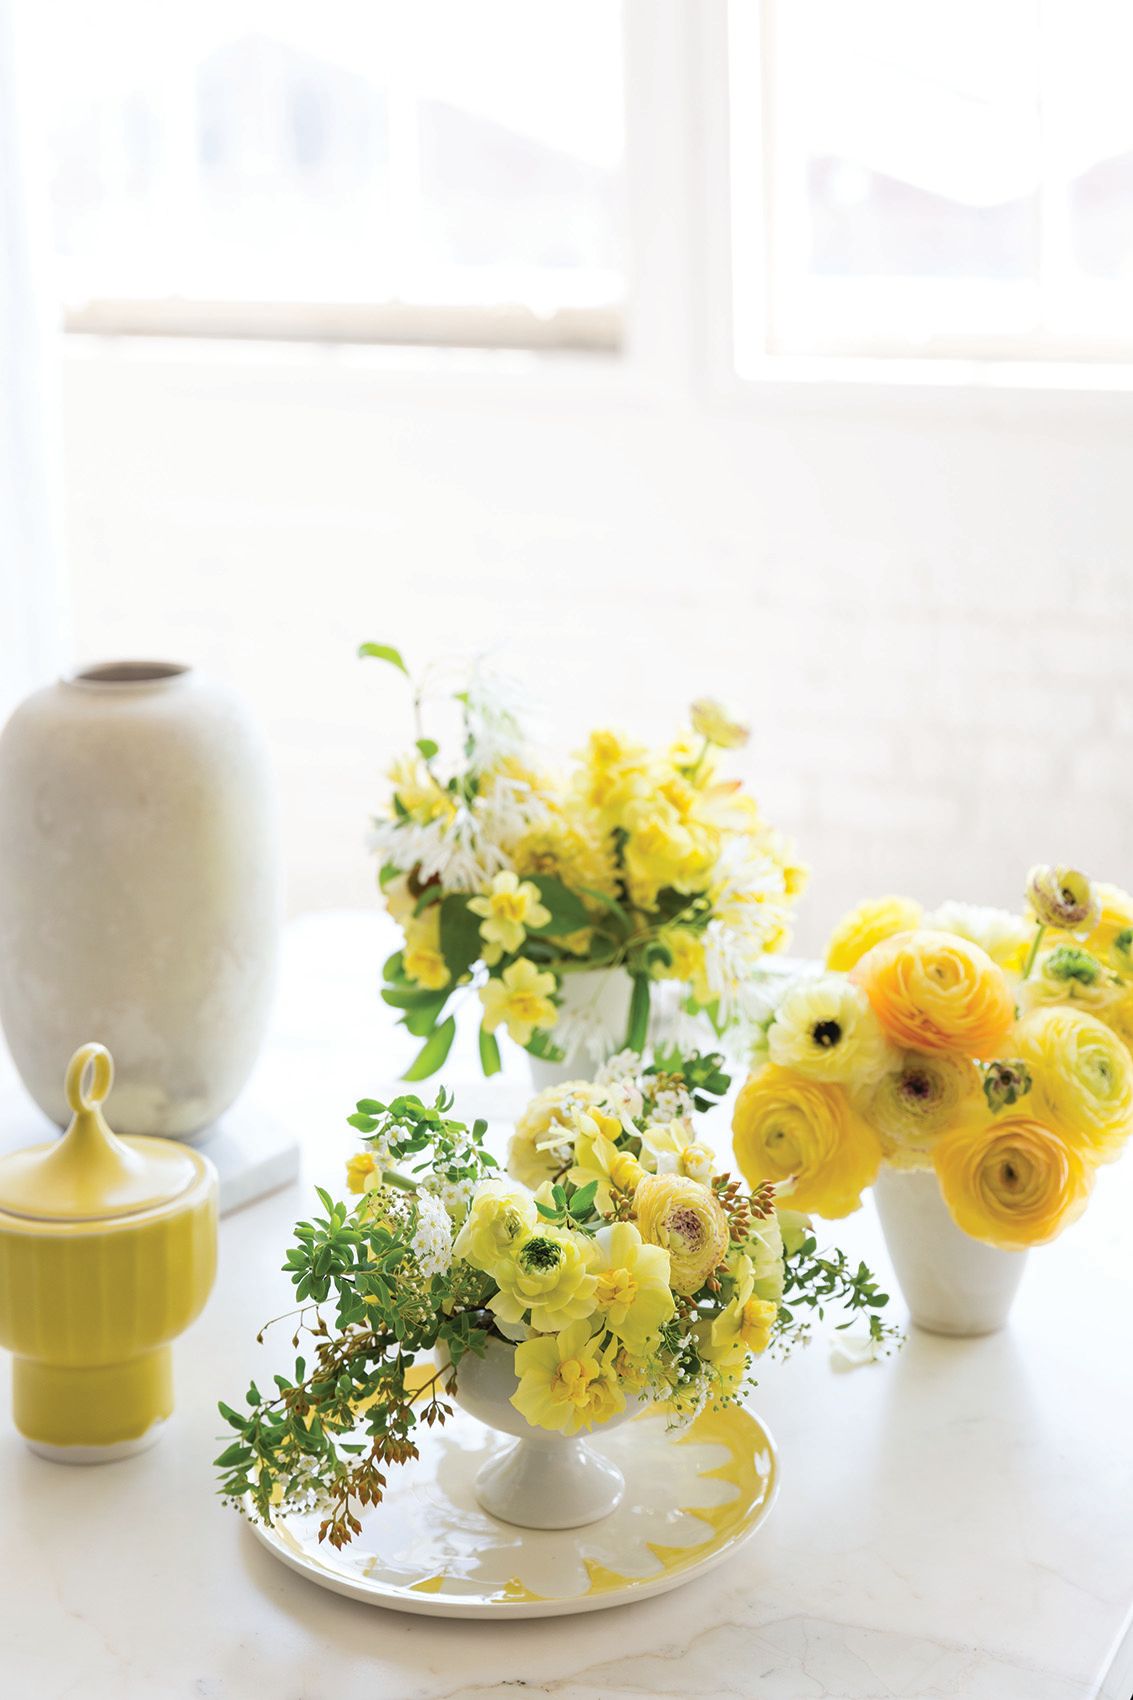 ثلاثة تنسيقات زهور صفراء من أرييلا شيزار